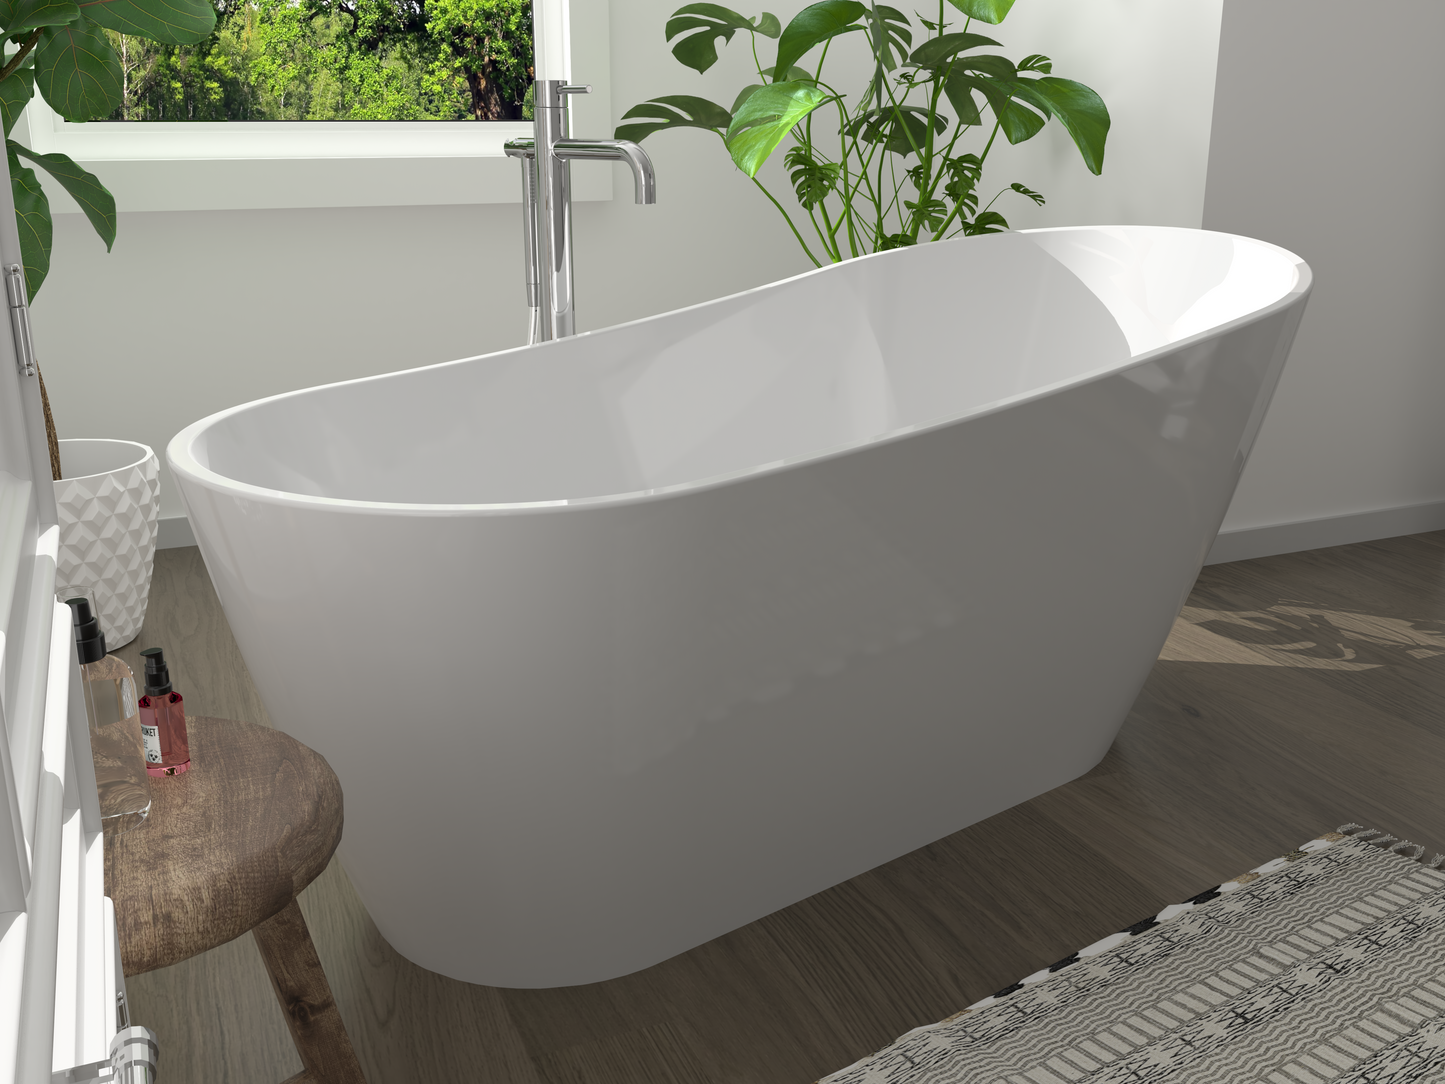 Freistehende Badewanne VITO - Acryl weiß glänzend, Länge 1600mm